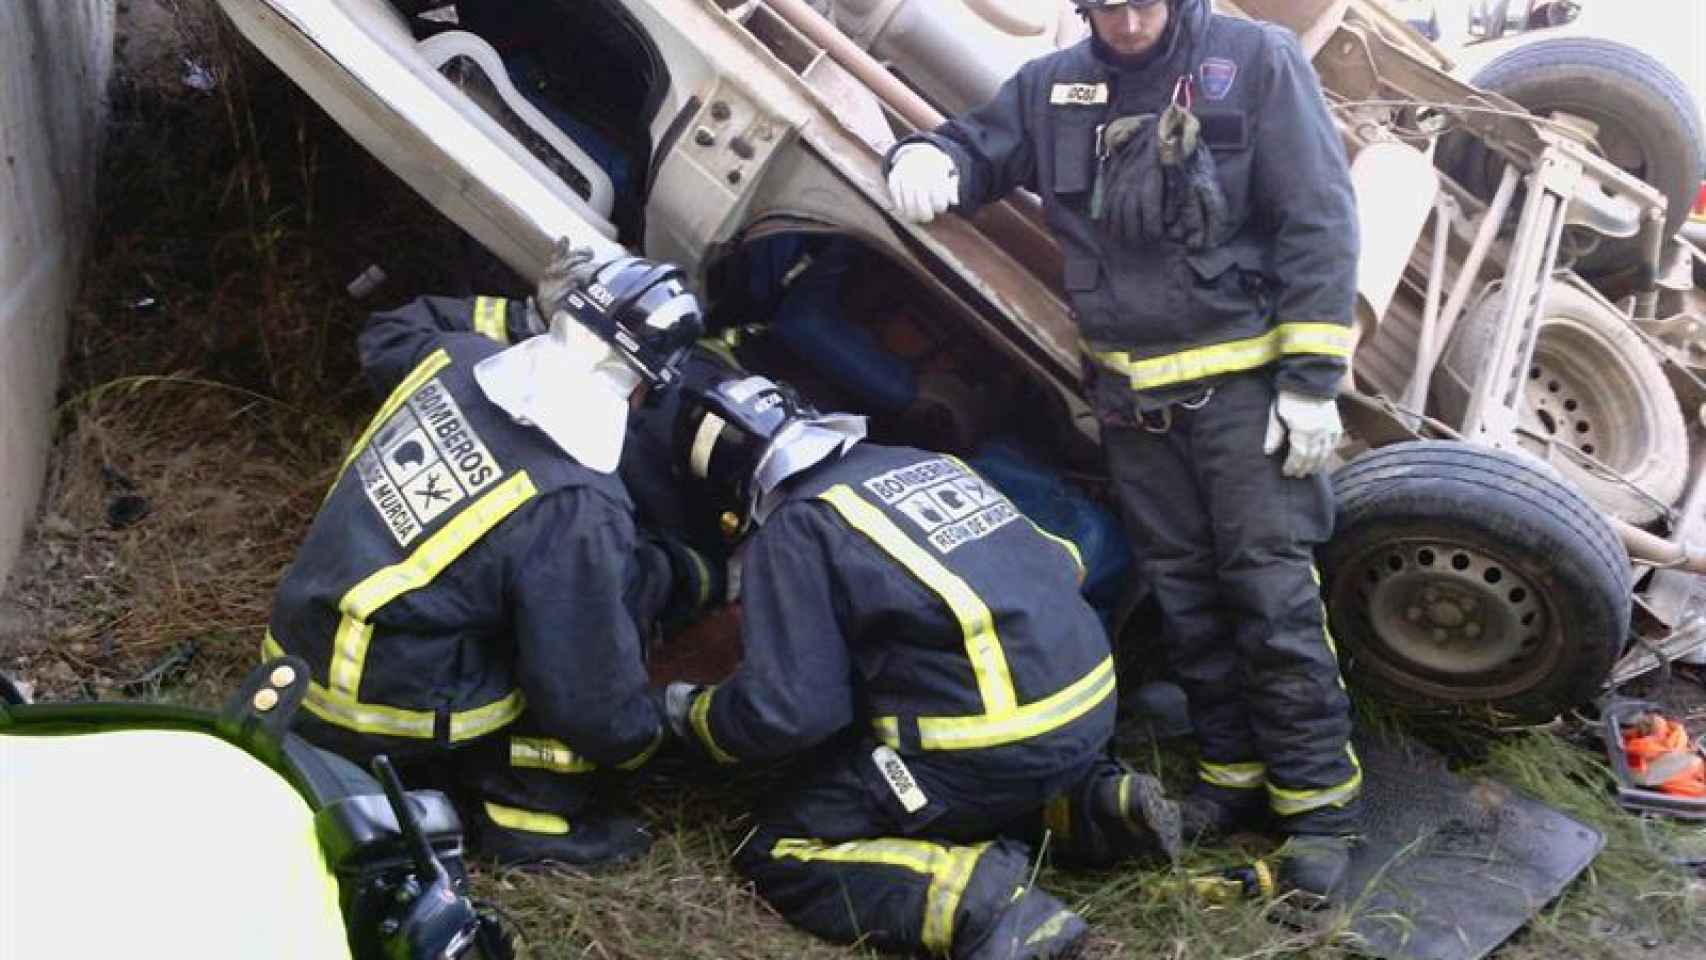 Imagen facilitada por Protección Civil del accidente producido en la autovía entre Lorca y Águilas.